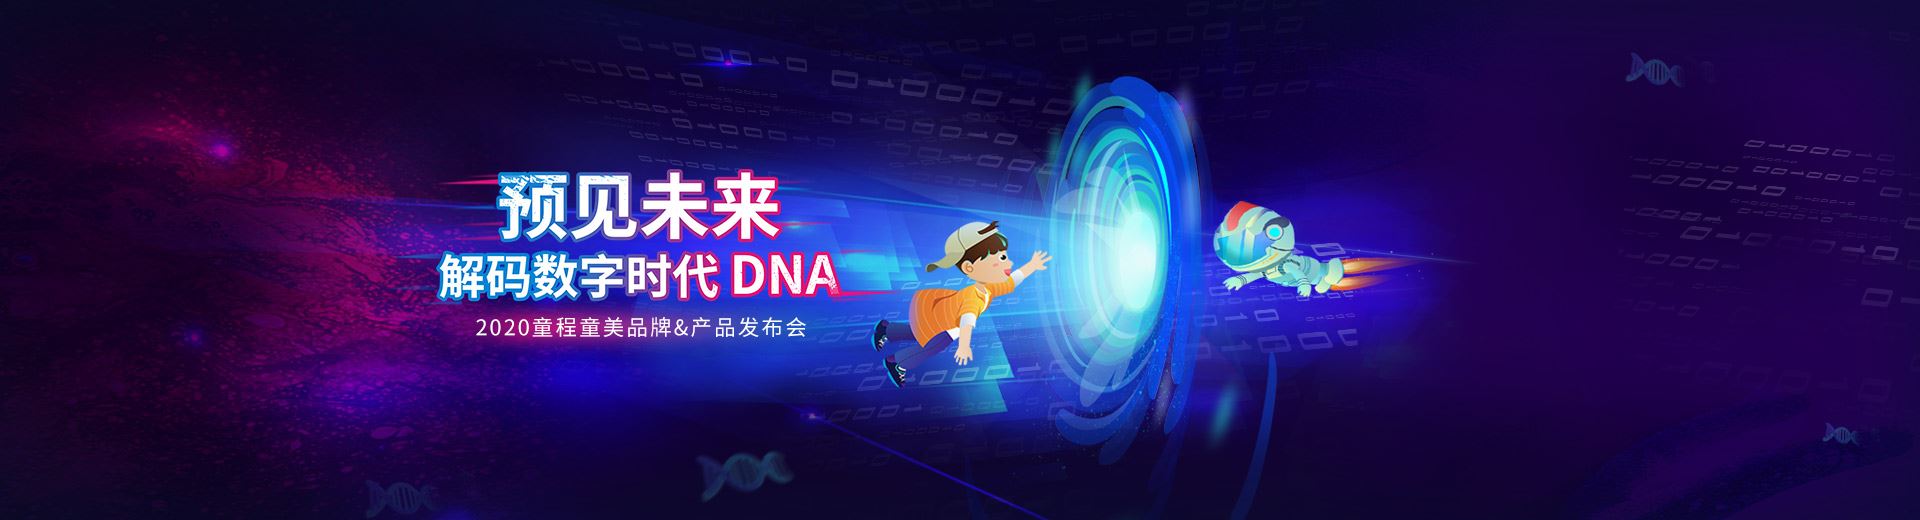 预见未来,解码数字时代DNA | 童程童美品牌&产品发盛大开幕！